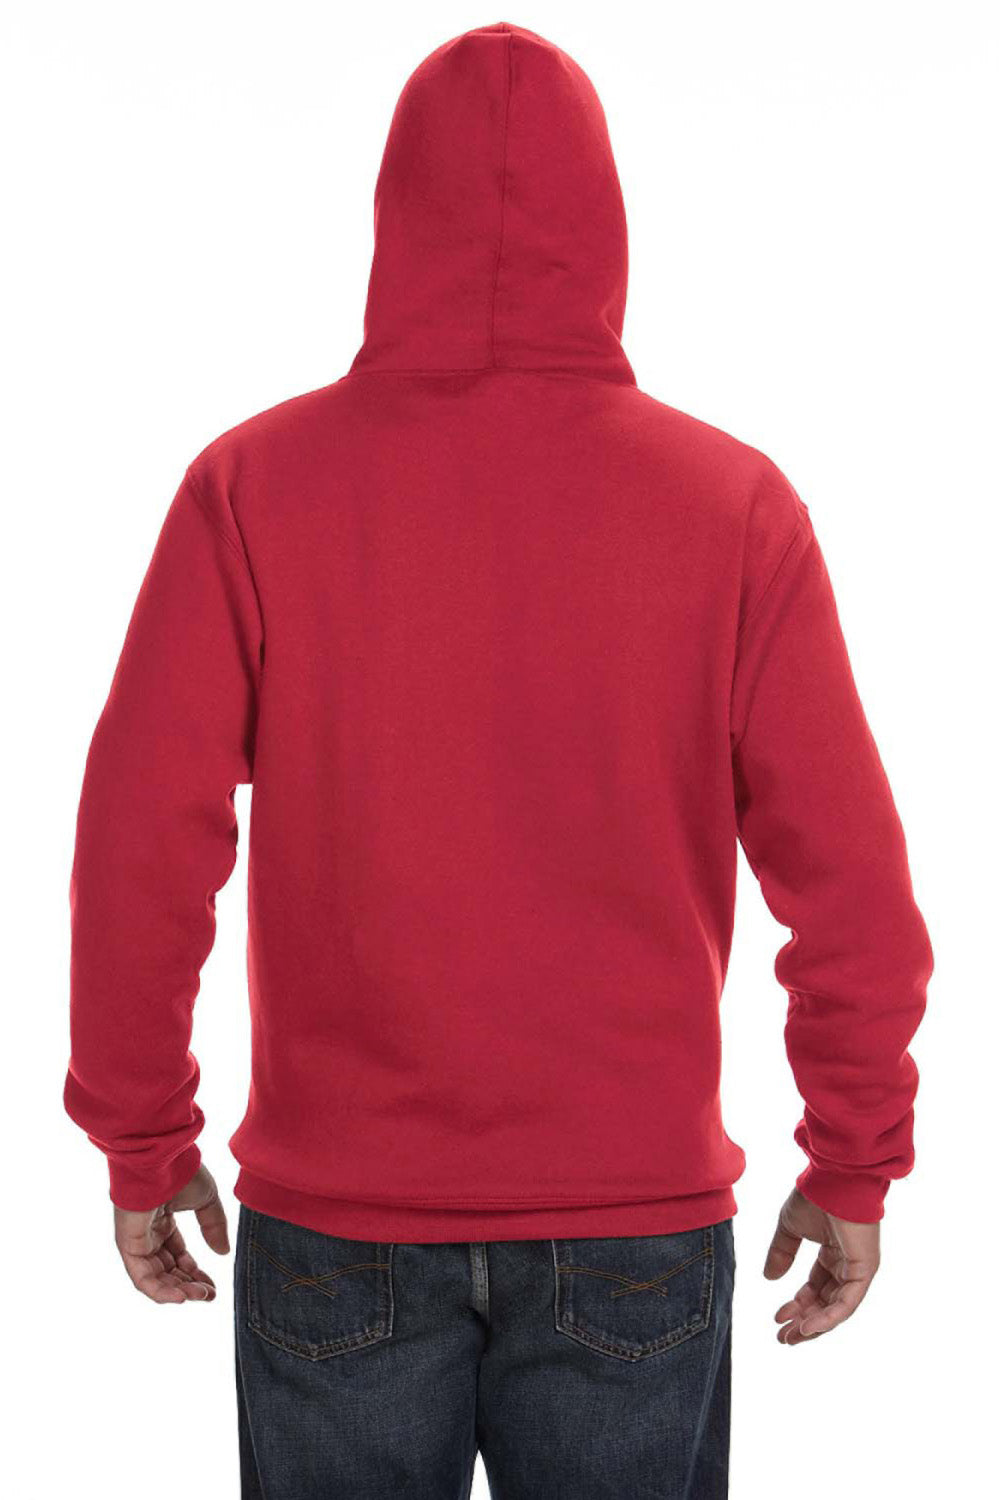 J America JA8824 Mens Premium Fleece Hooded Sweatshirt Hoodie Red Back